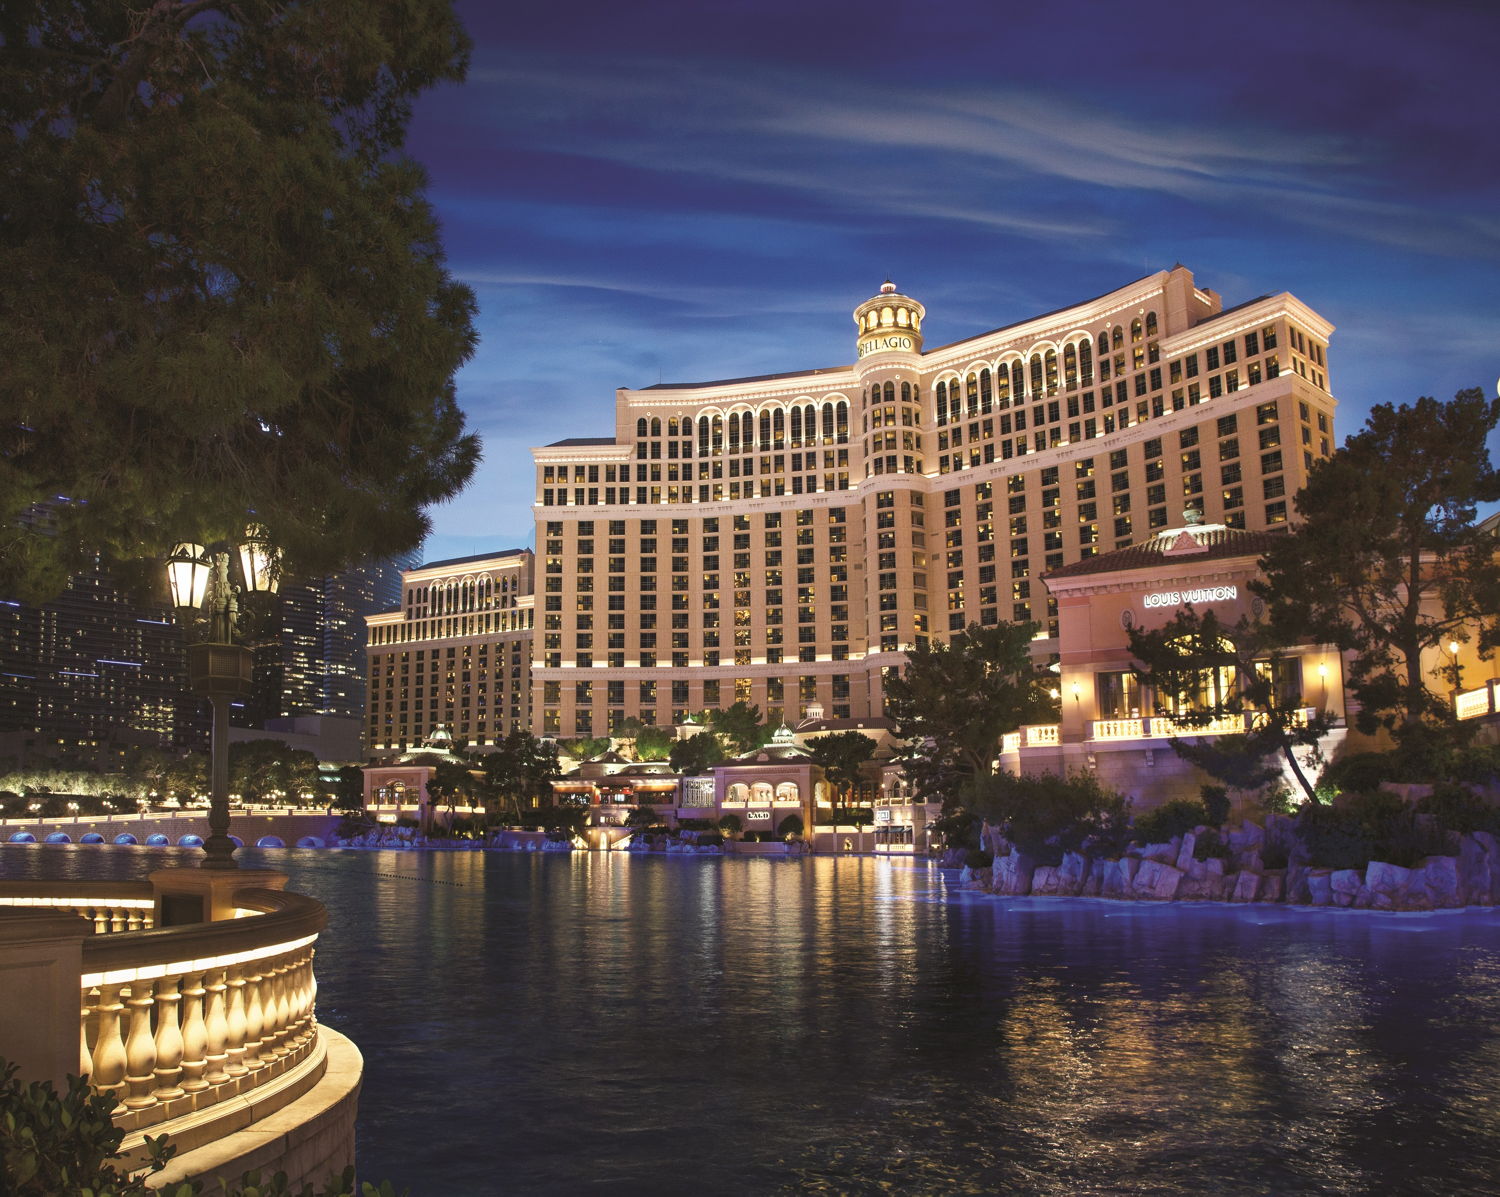 De beroemde fonteinen van Bellagio © MGM Resorts